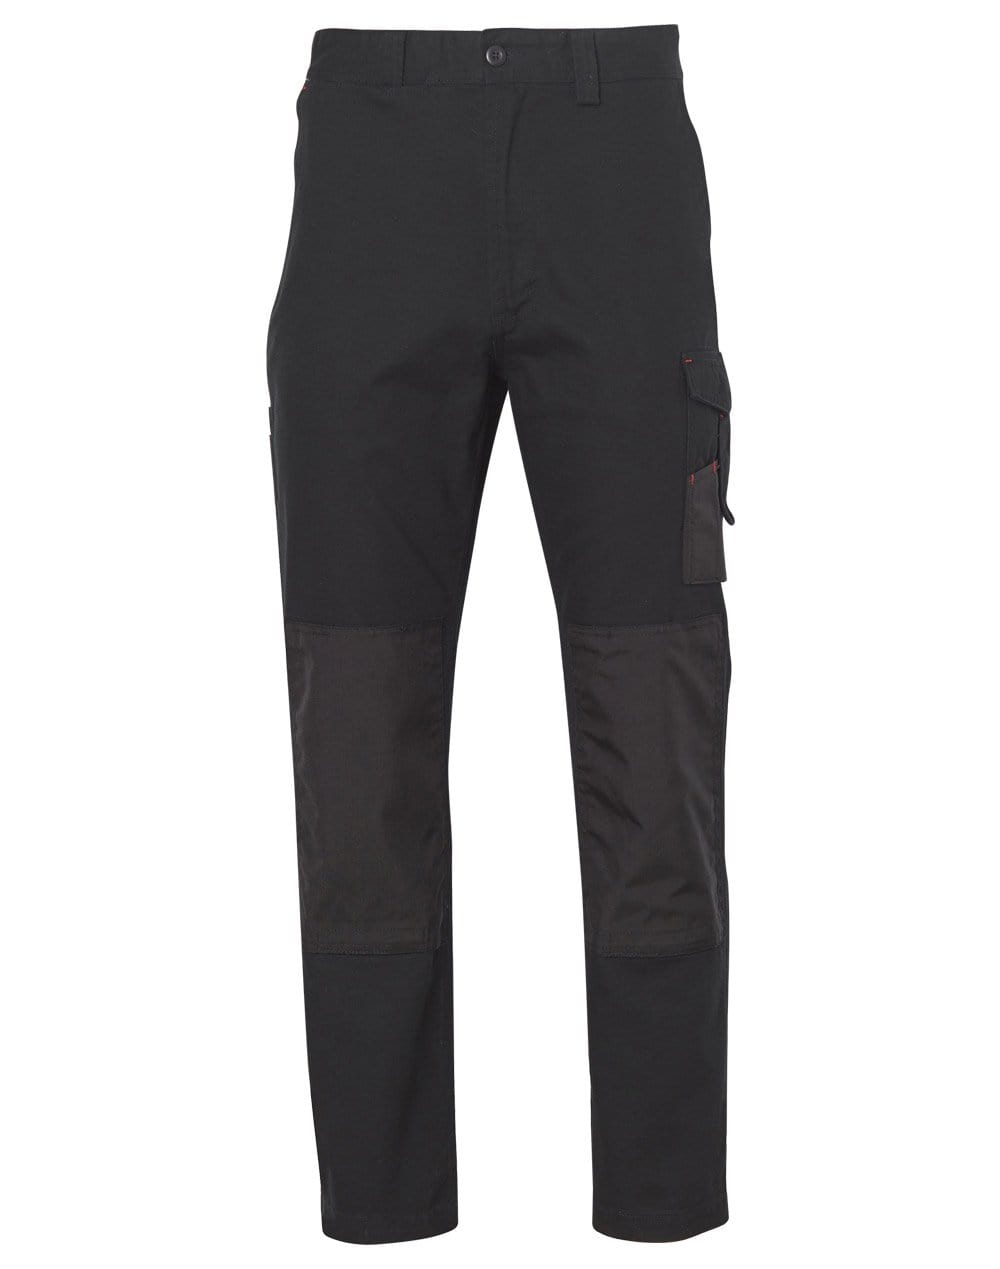 Cordura Durable Work Pants Stout Size WP17 Work Wear Australian Industrial Wear 87S Black 